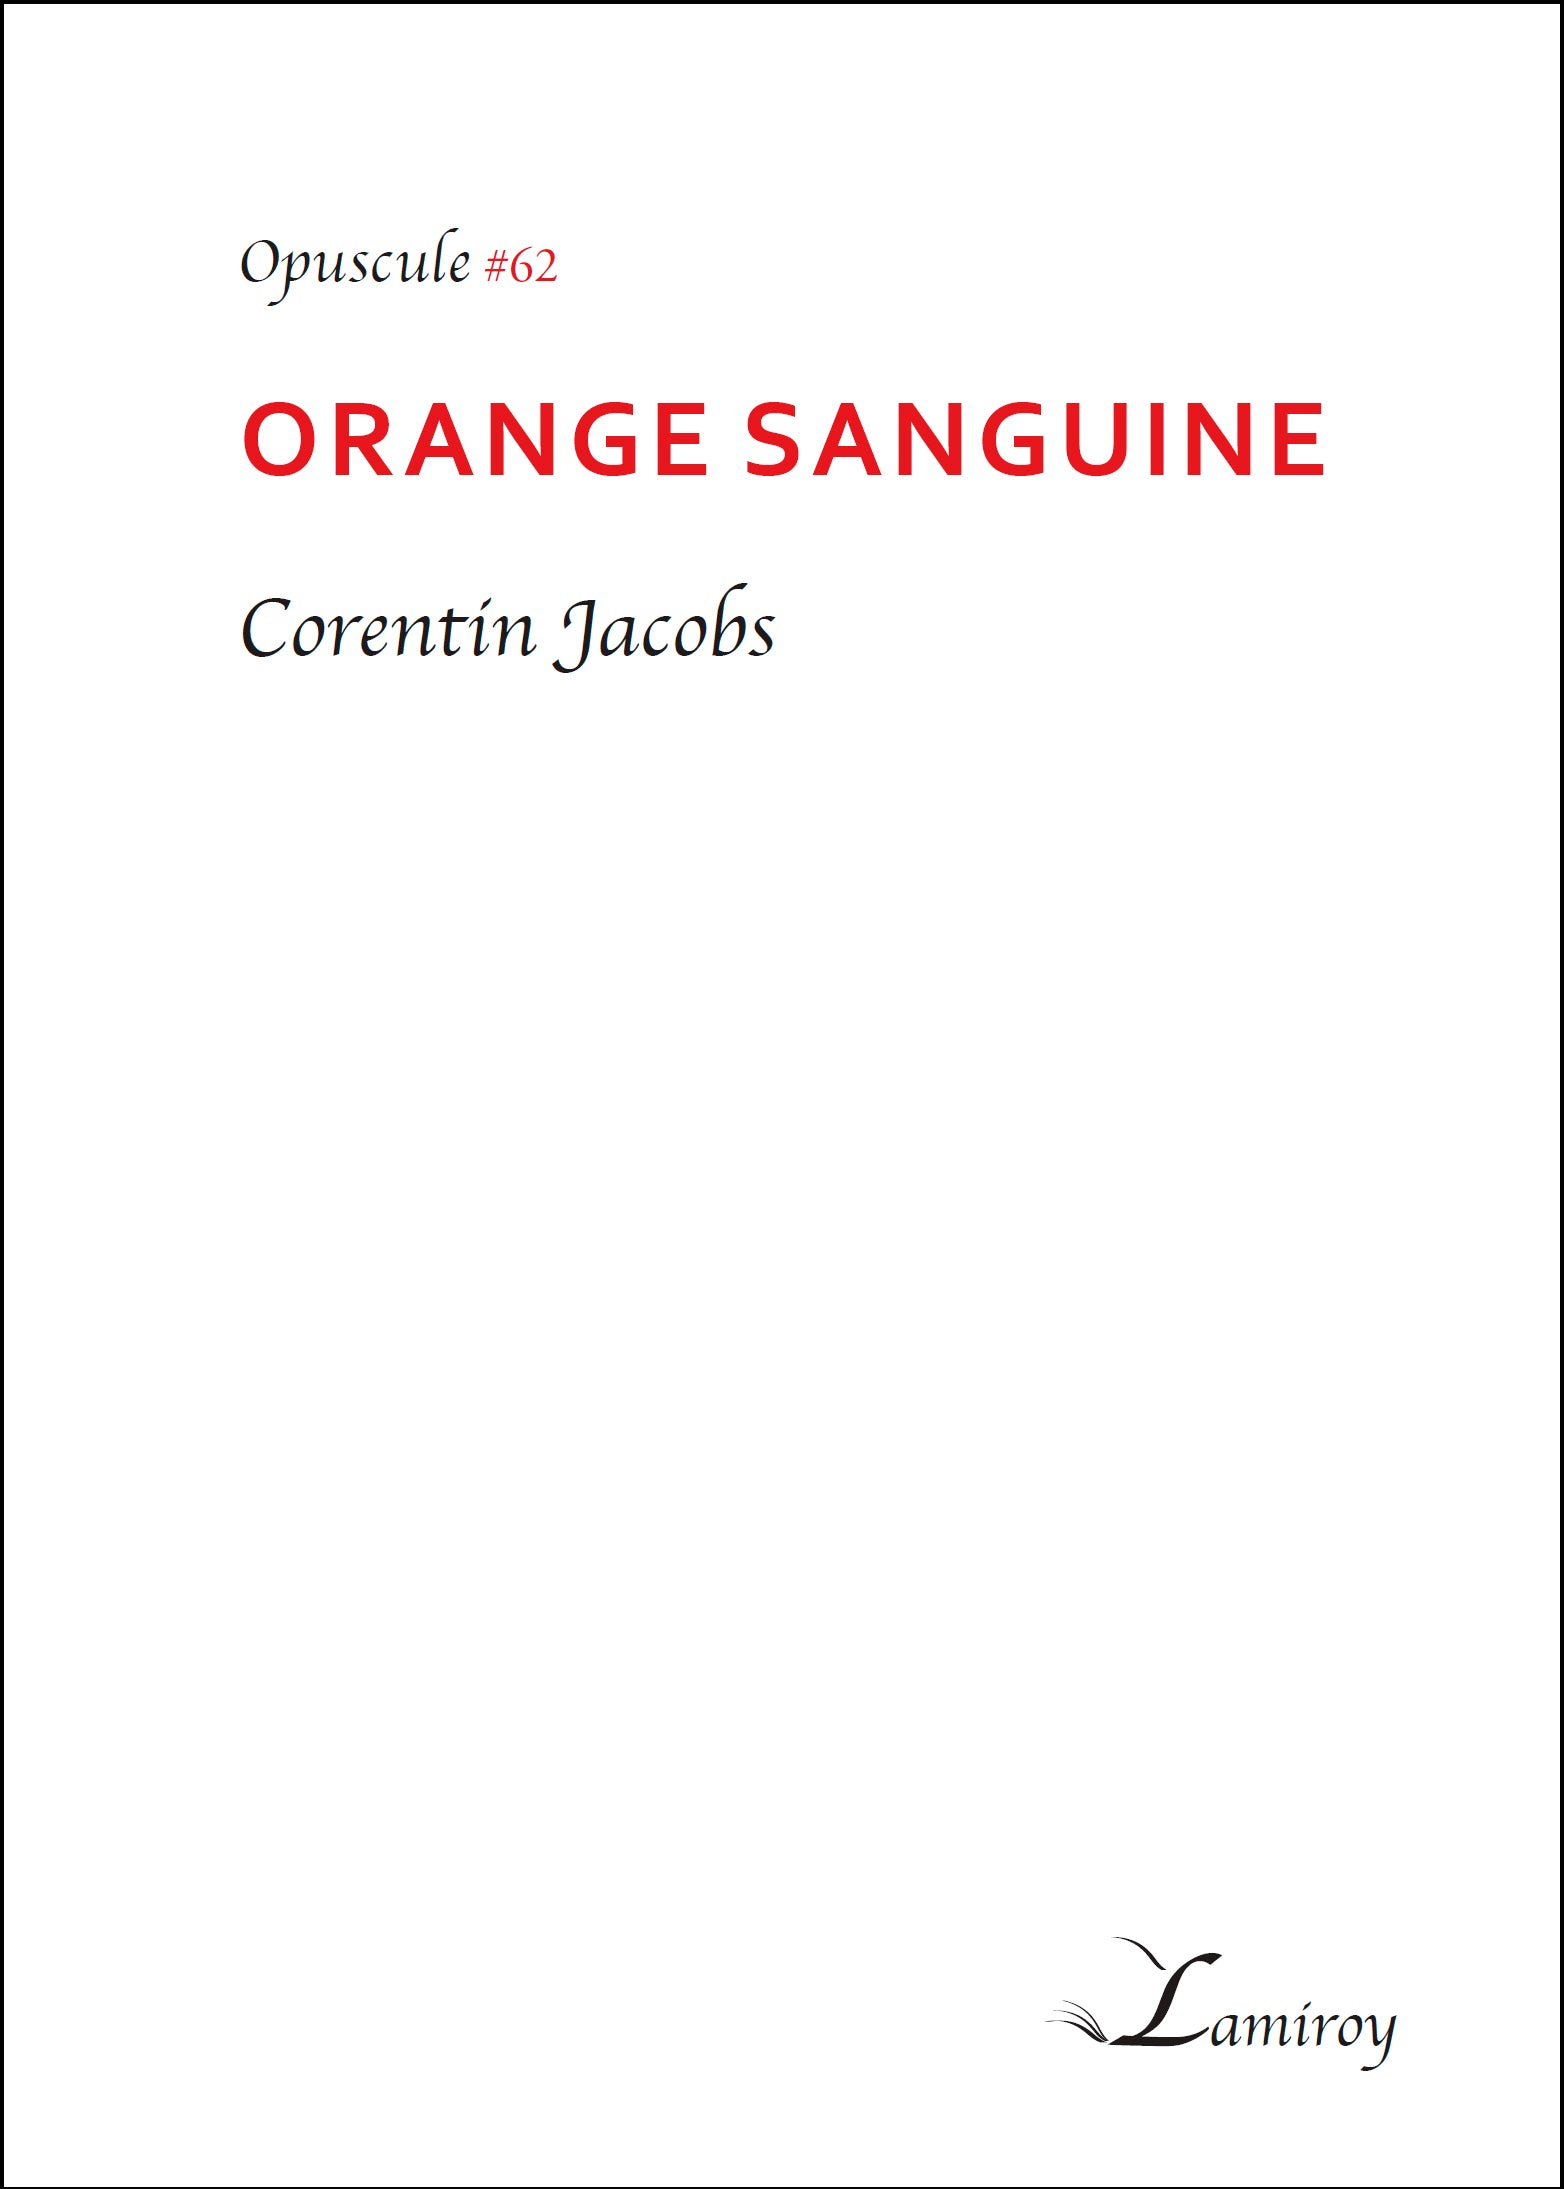 Orange Sanguine #62